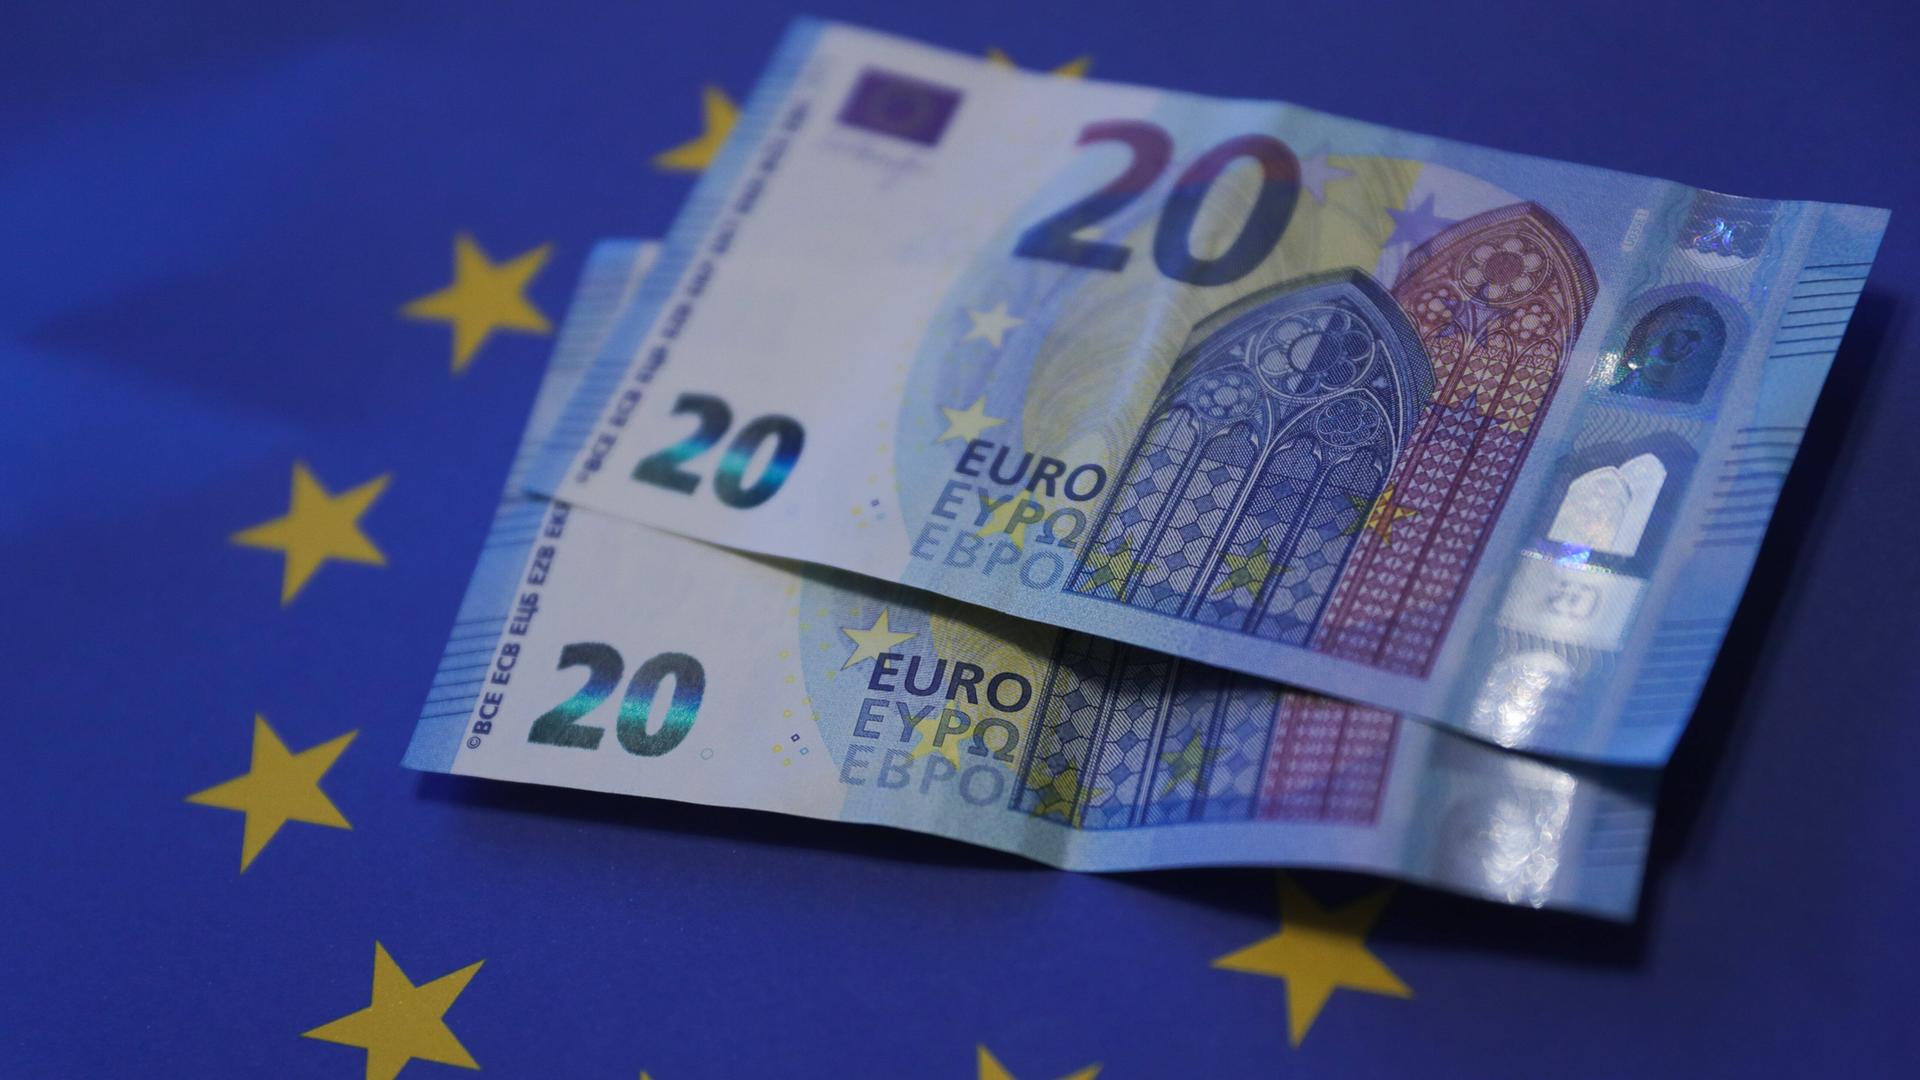 Währungsunion - Bundestag unterstützt Euro-Einführung in Kroatien